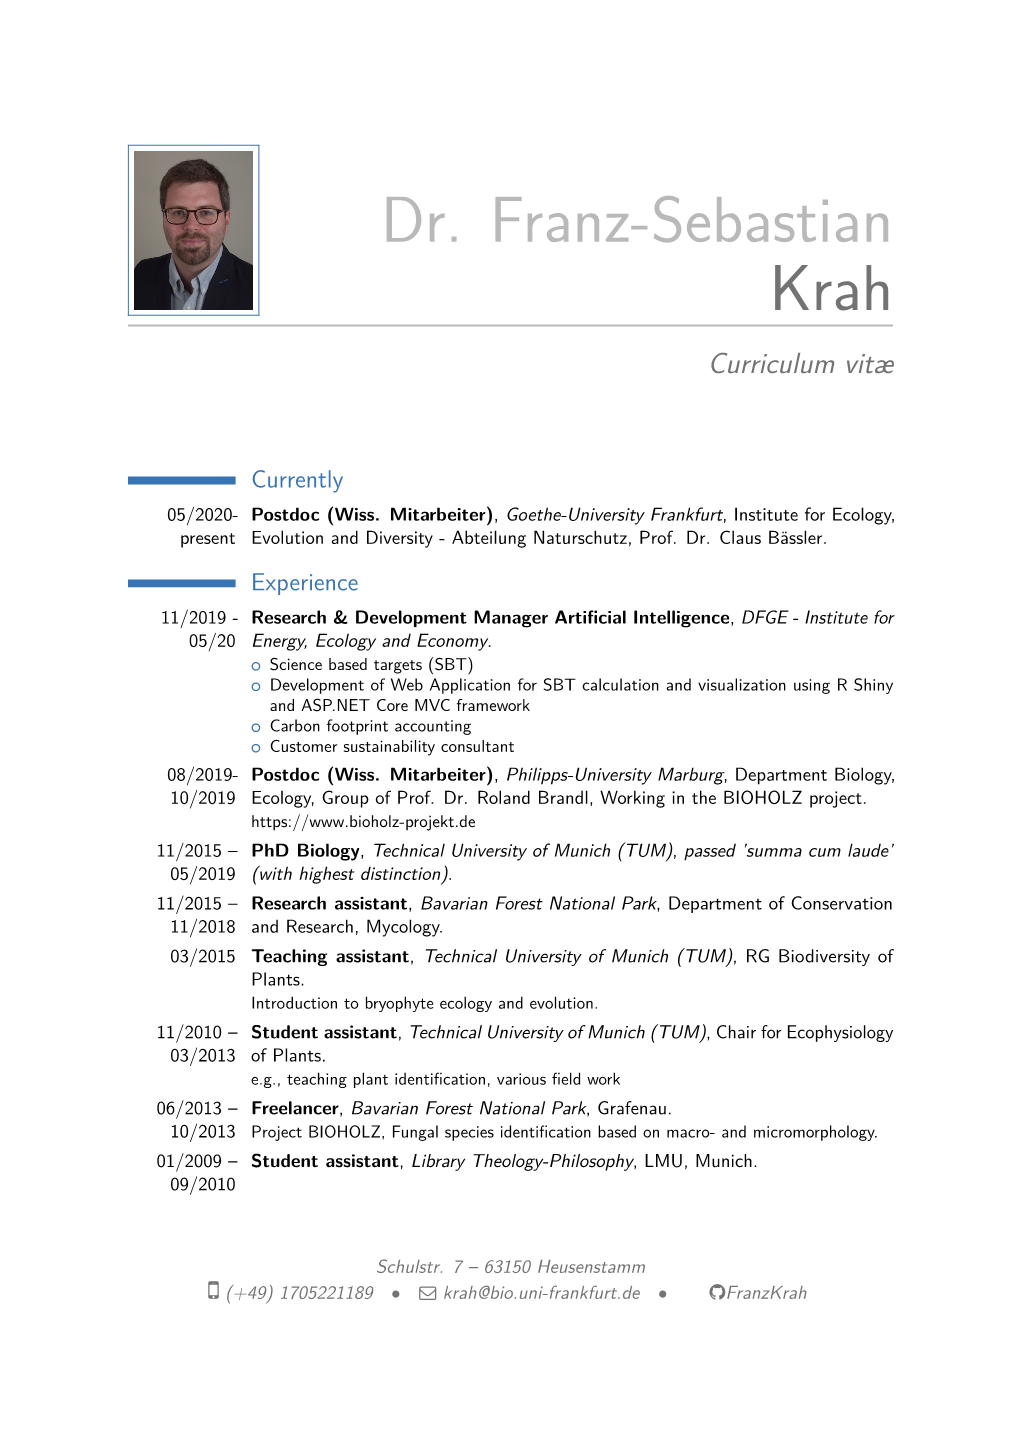 Dr. Franz-Sebastian Krah – Curriculum Vitæ